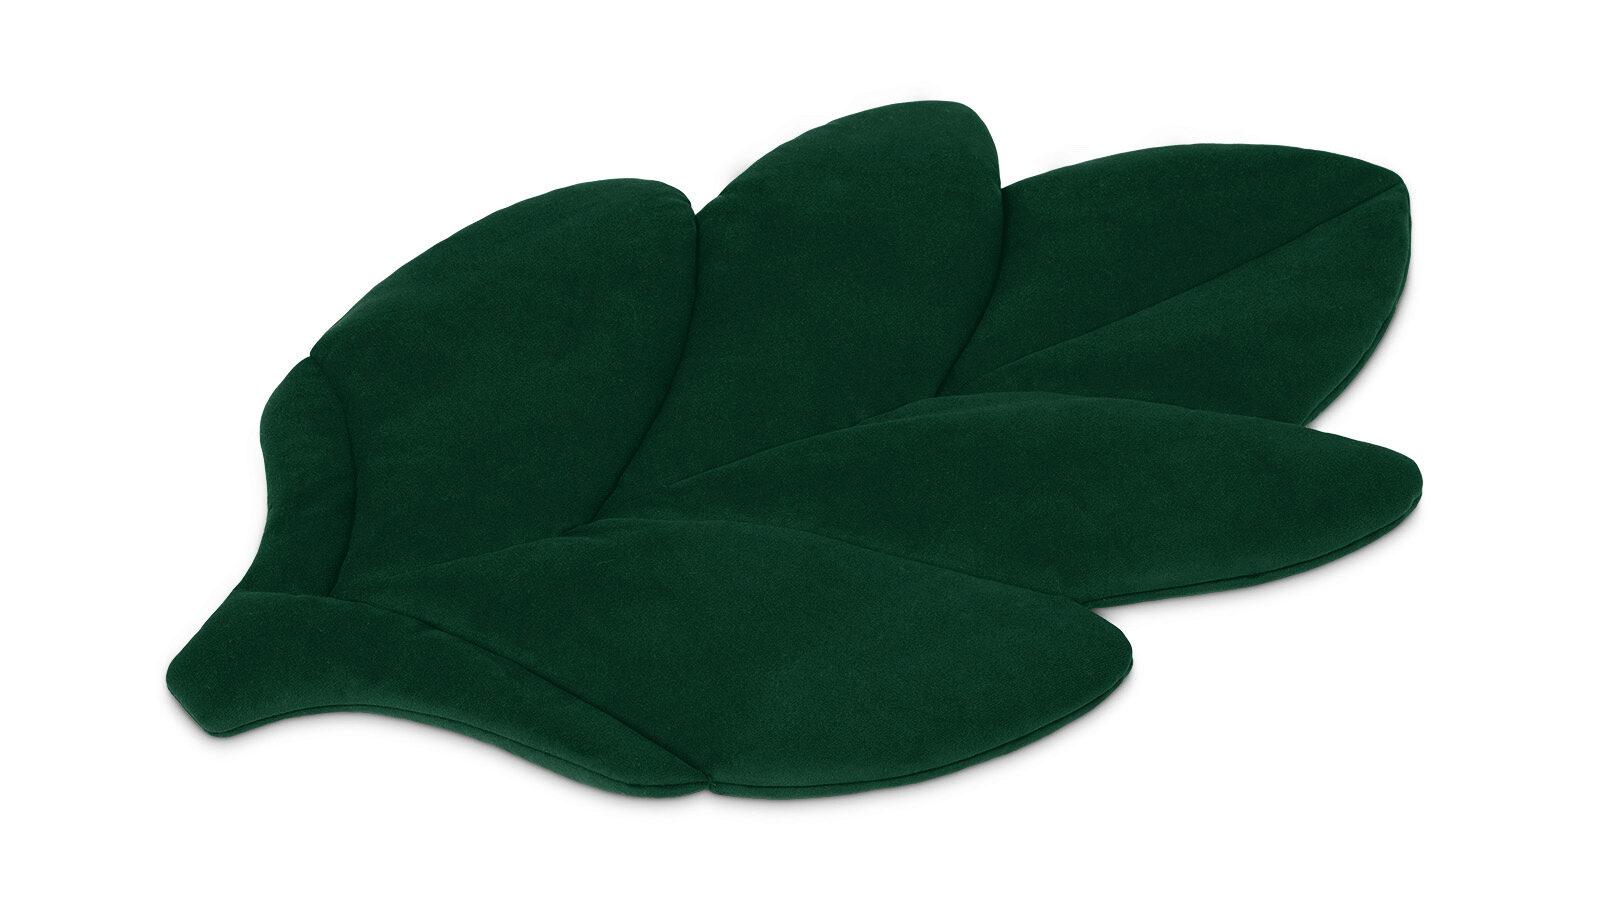 Декоративная подушка Лист малый паспарту размер рамки 24 × 24 см прозрачный лист клейкая лента зелёный